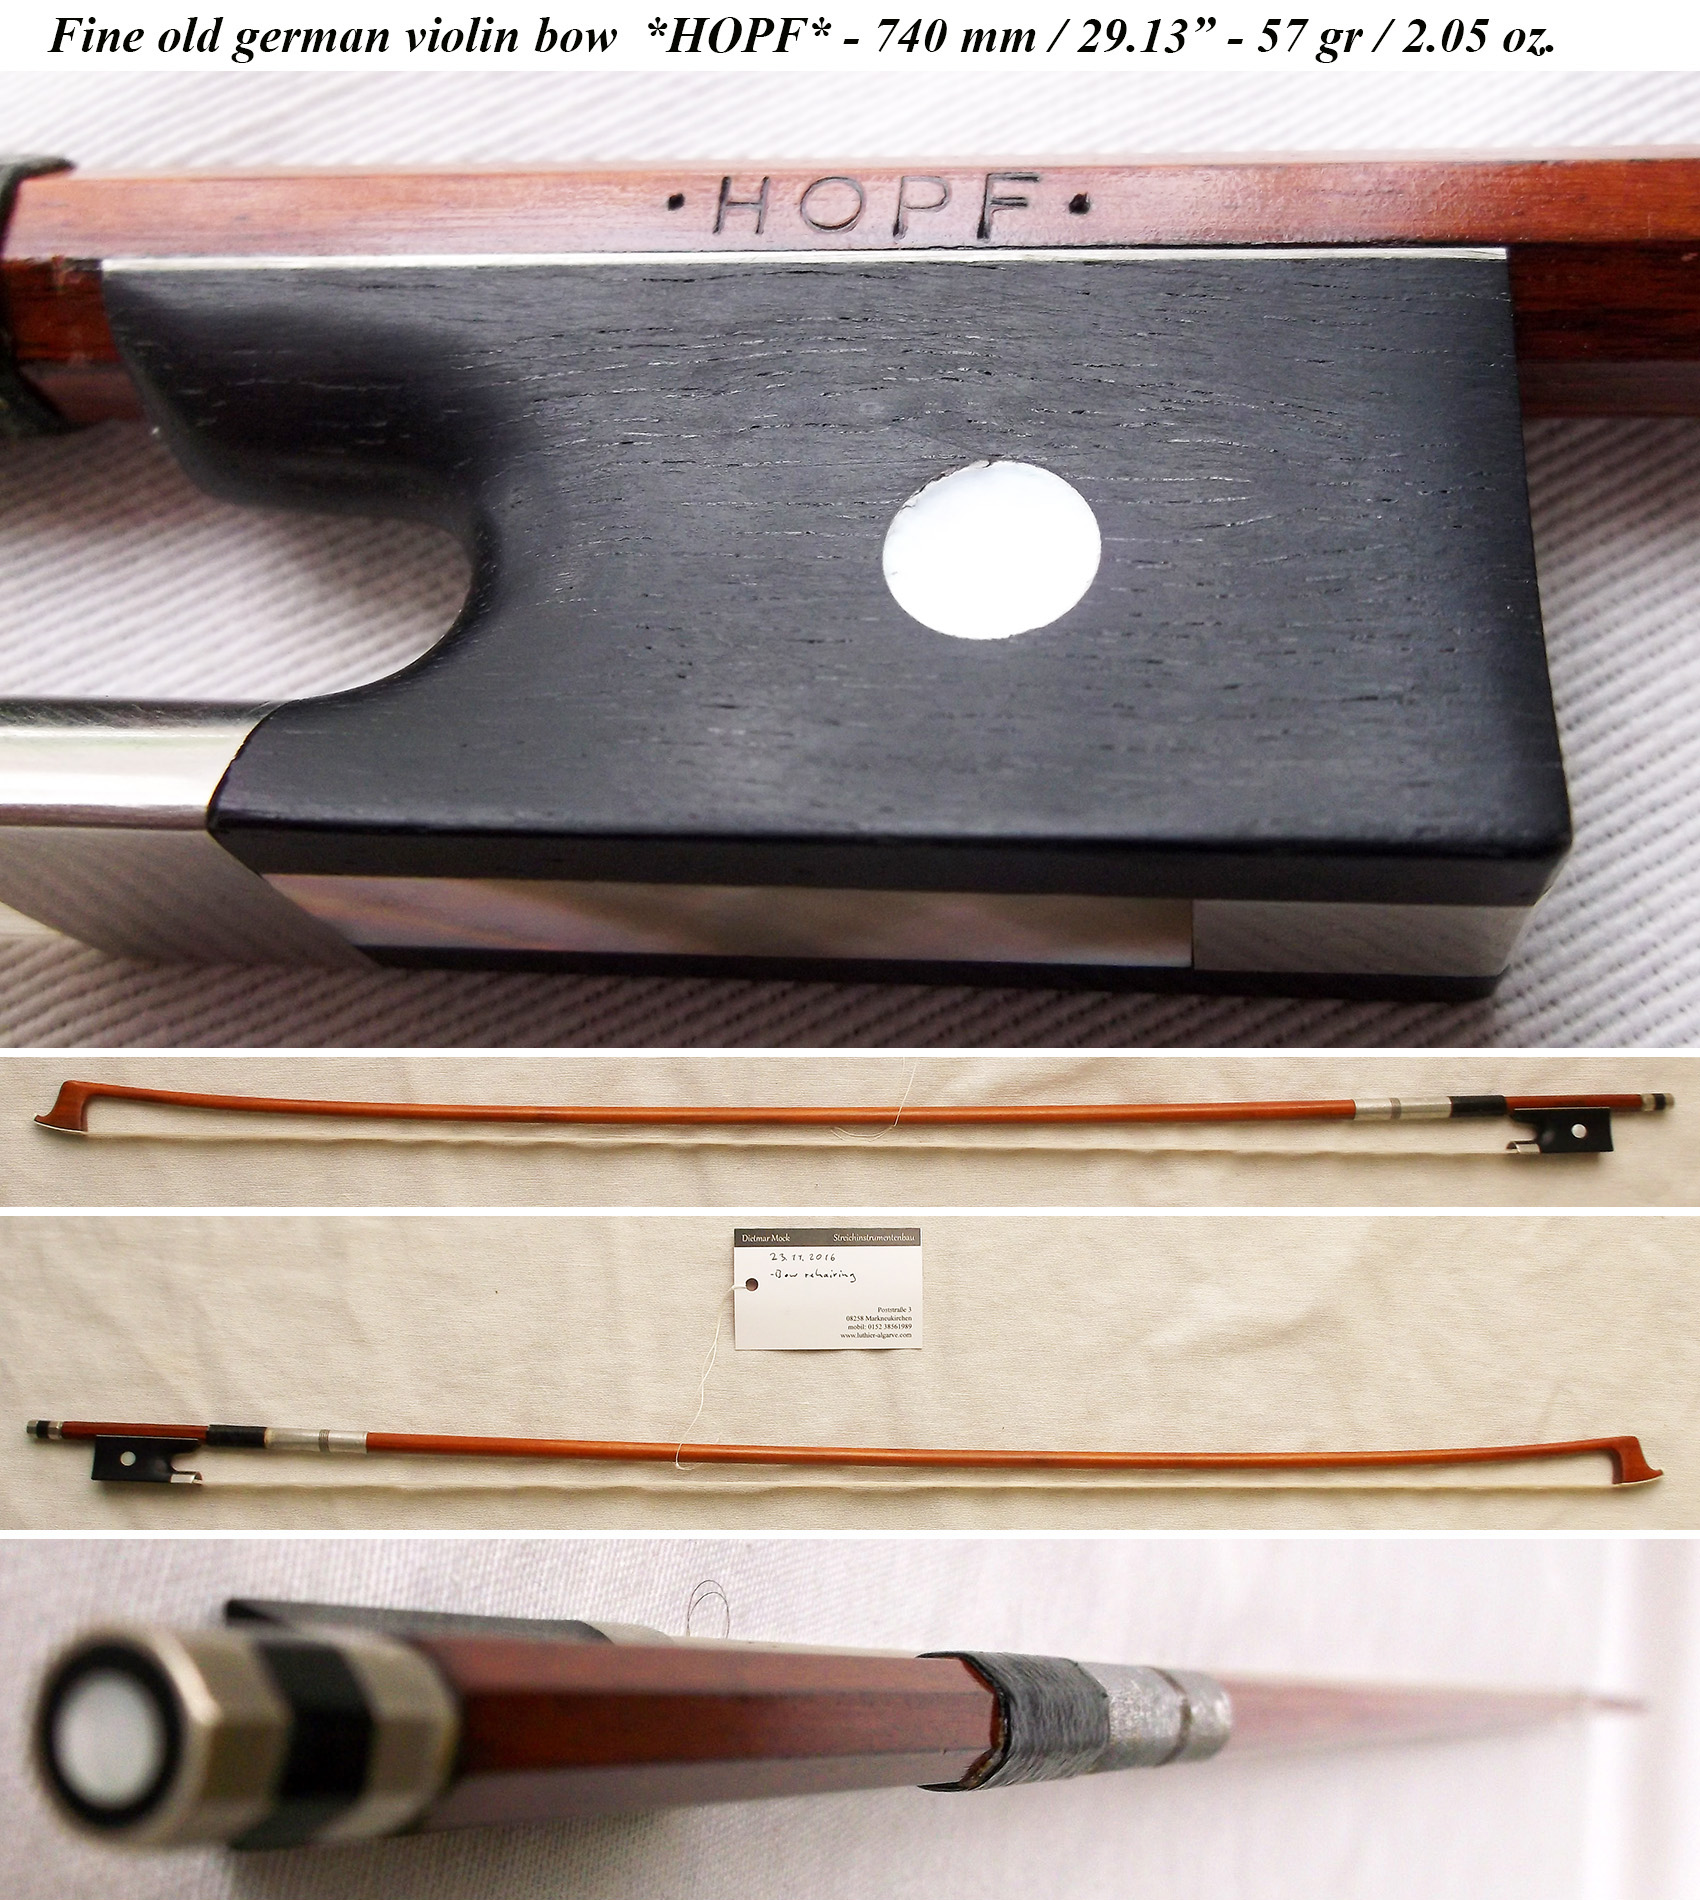 hopf violin bow 901